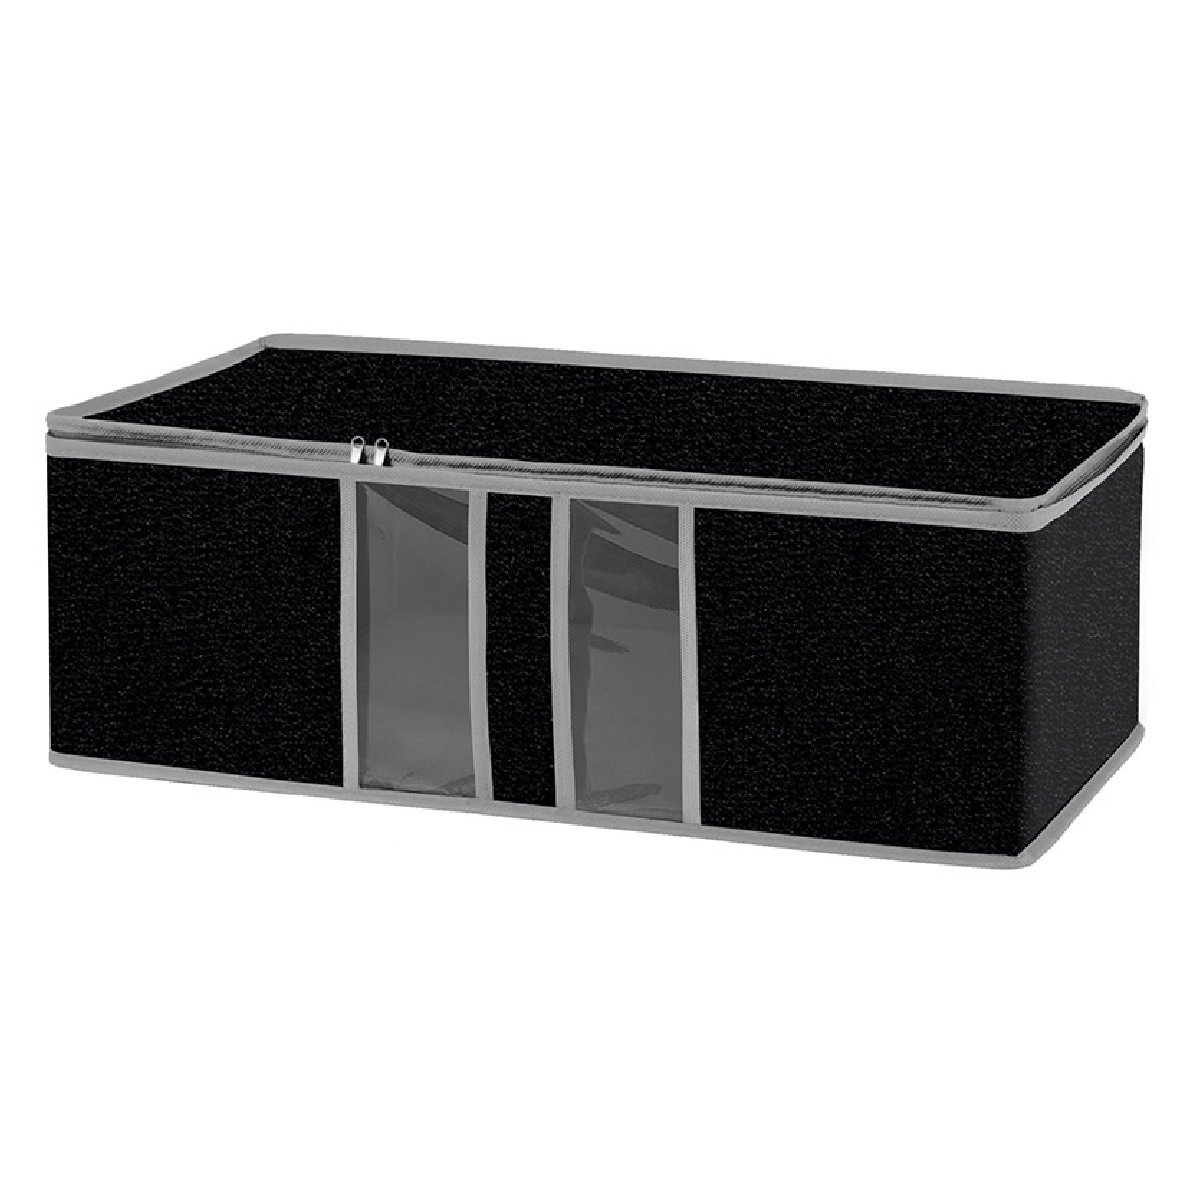 Ящик текстильный для хранения вещей Black 60x30x20 см (312616)